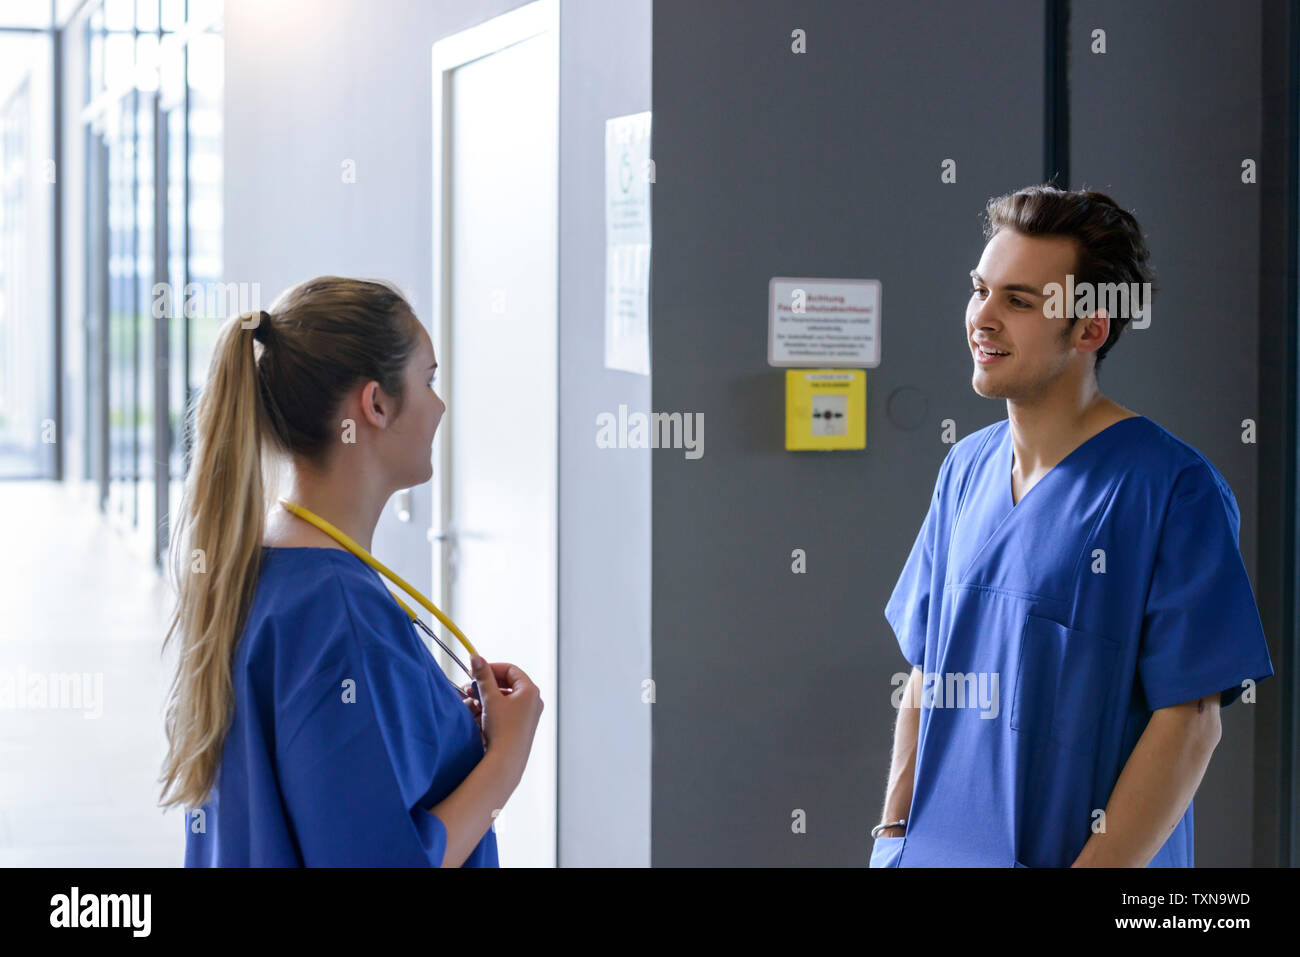 Männliche und weibliche Ärzte im Krankenhaus Flur chatten Stockfoto